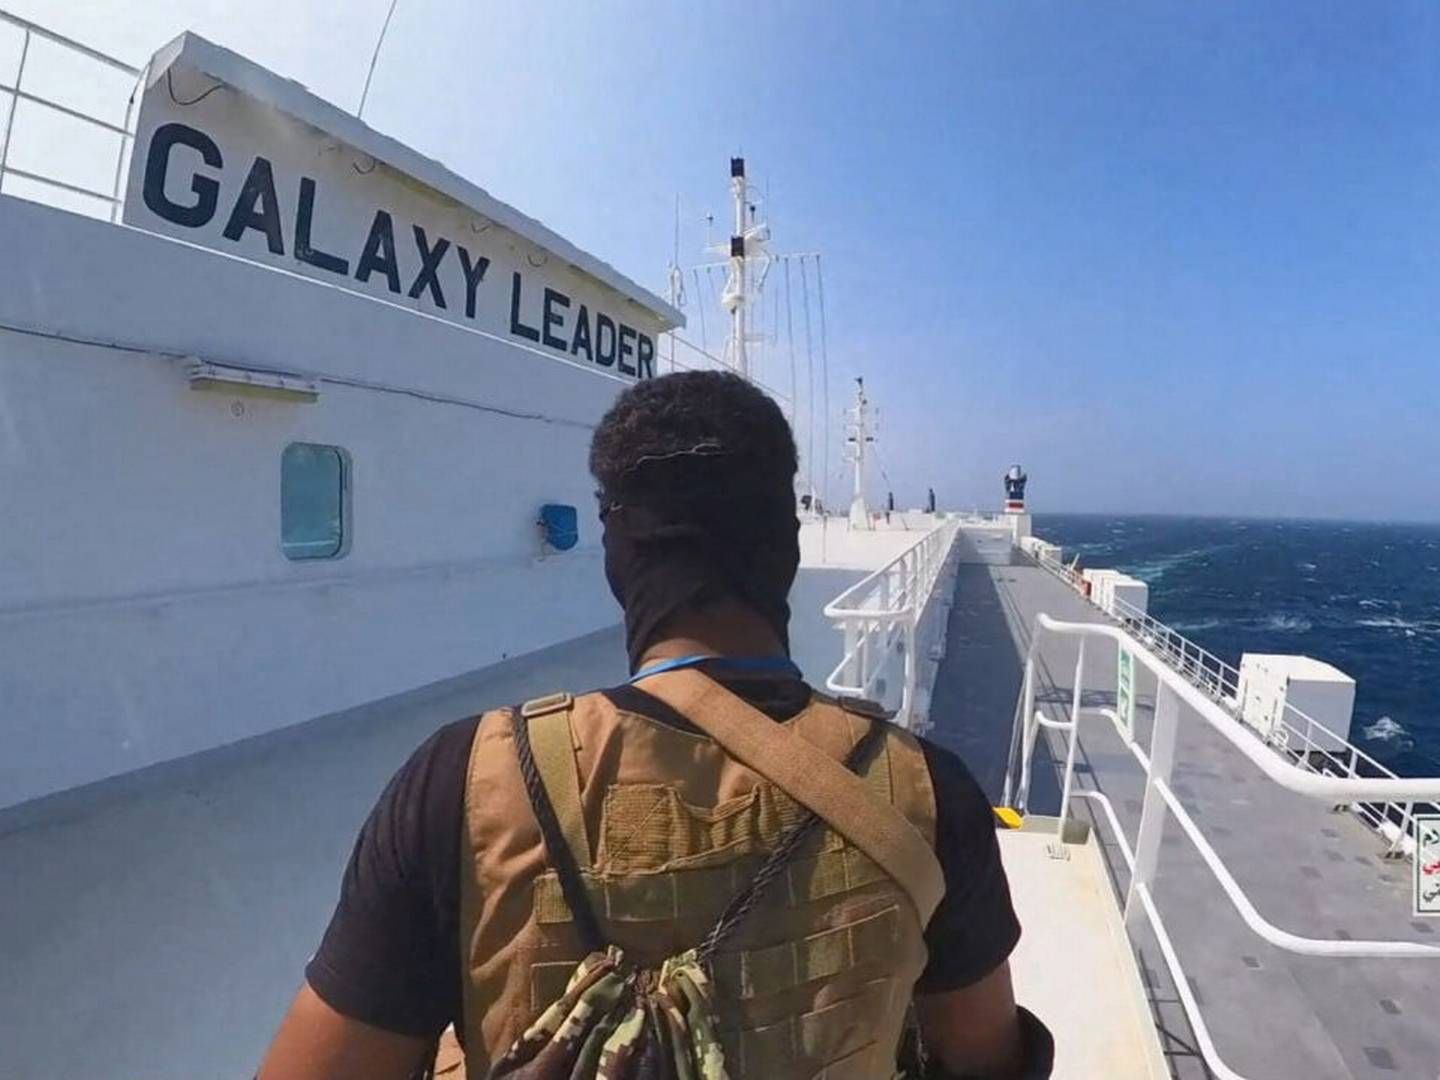 Et medlem af Houthi-bevægelsen står på biltransportskibet Galaxy Leader, der blev kapret i Det Røde Hav i november. Den seneste uge er en stribe containerskibe blevet angrebet af militsen. | Foto: Houthi Military Media/Reuters/Ritzau Scanpix